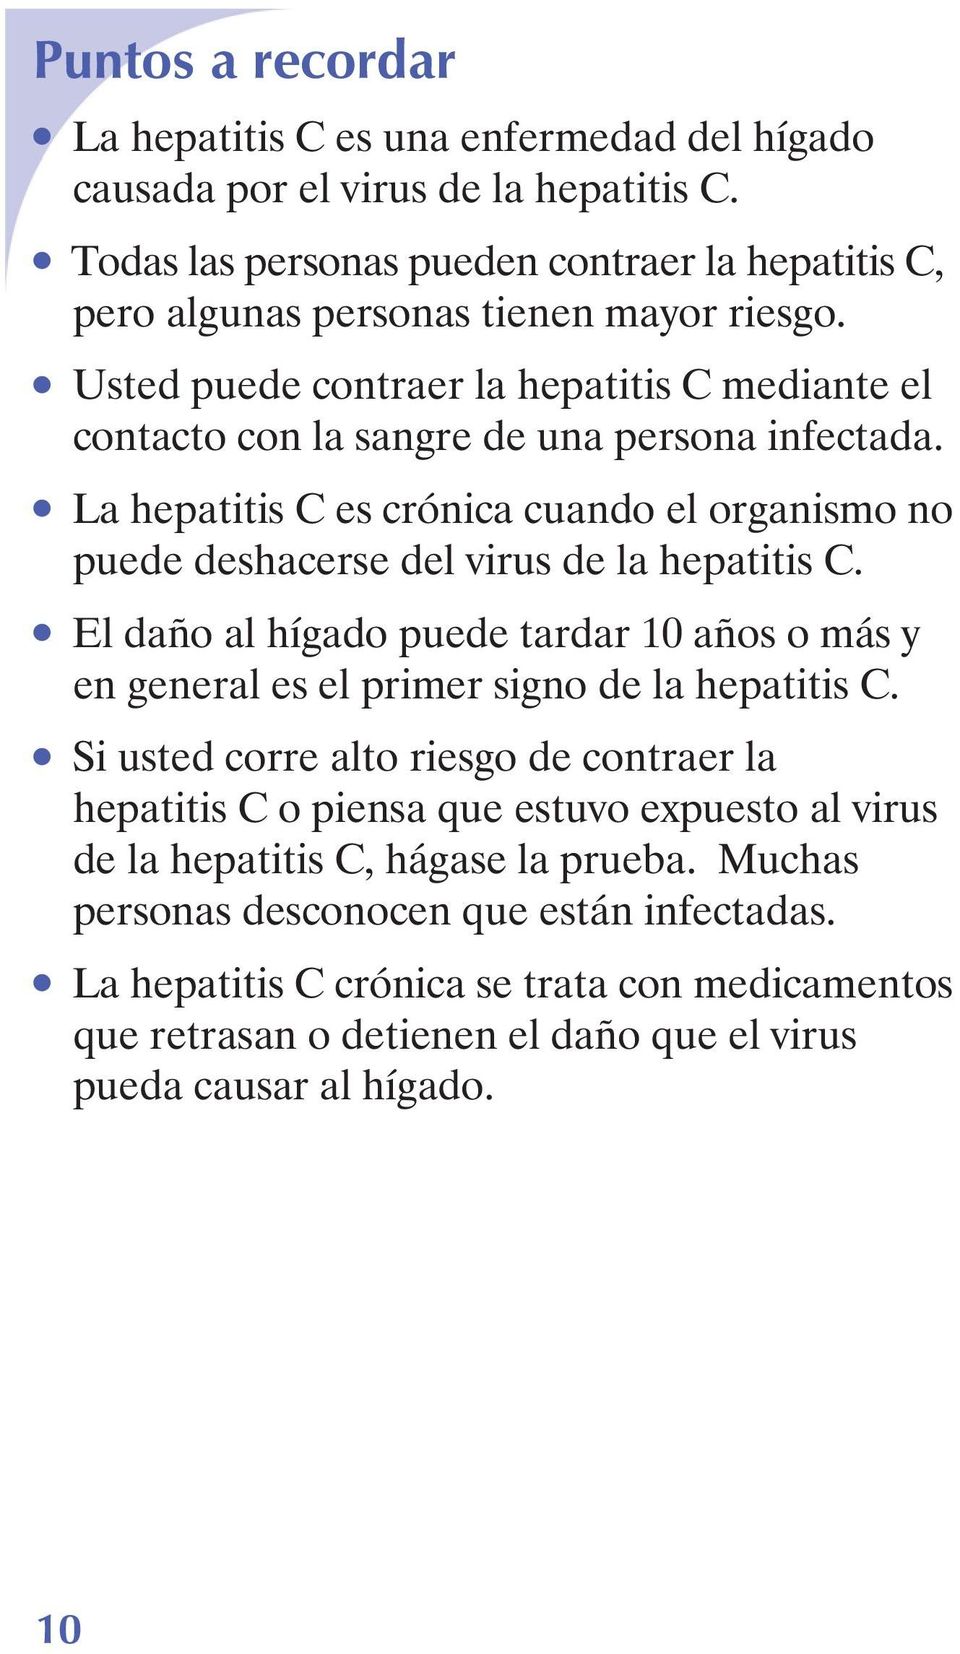 El daño al hígado puede tardar 10 años o más y en general es el primer signo de la hepatitis C.